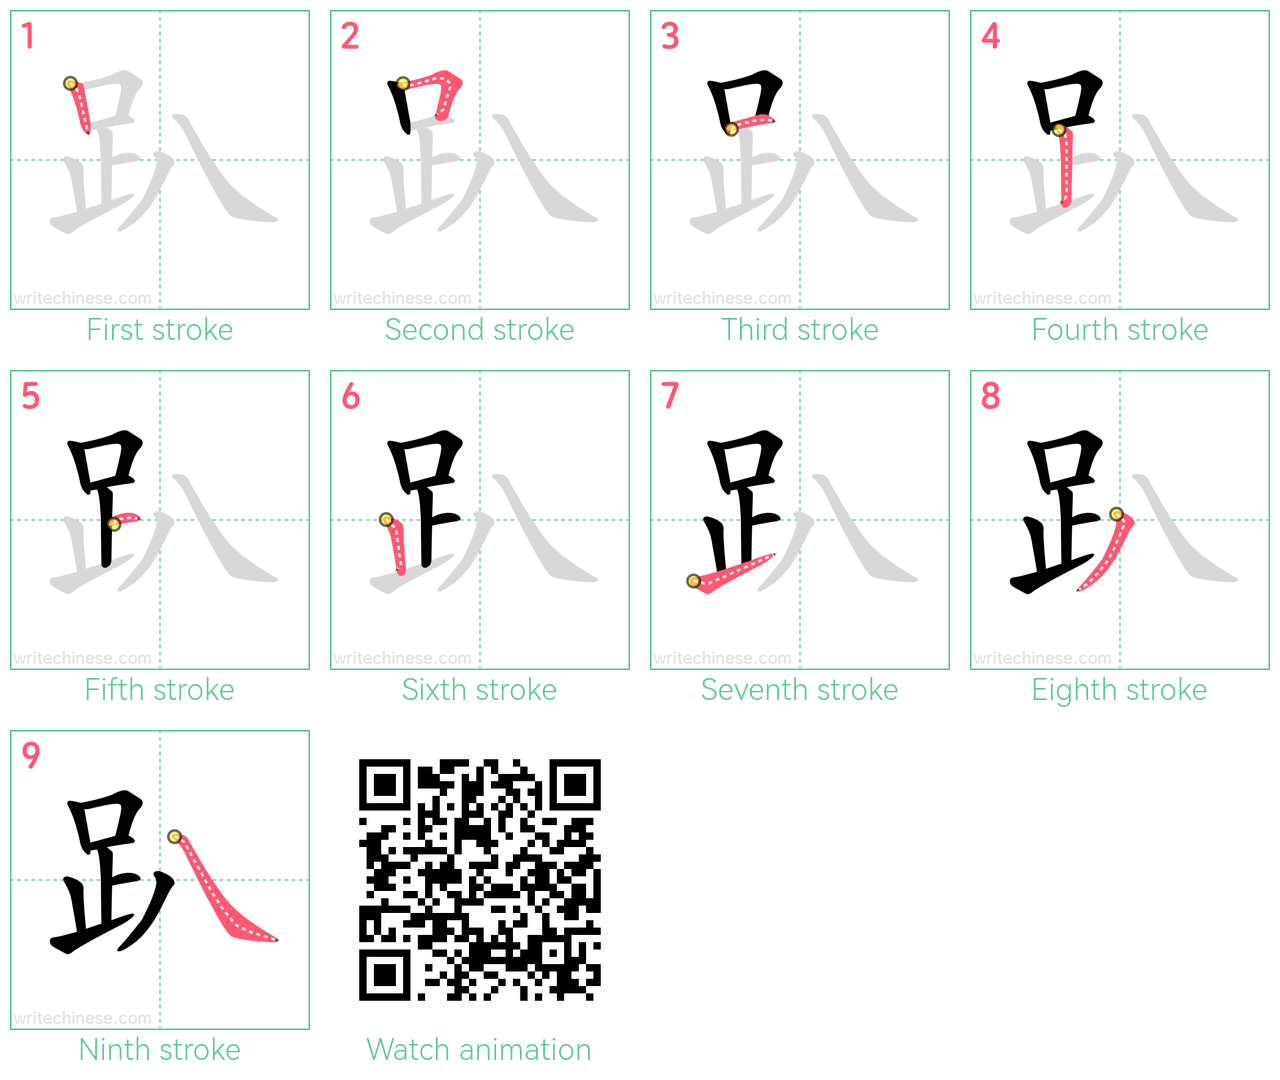 趴 step-by-step stroke order diagrams